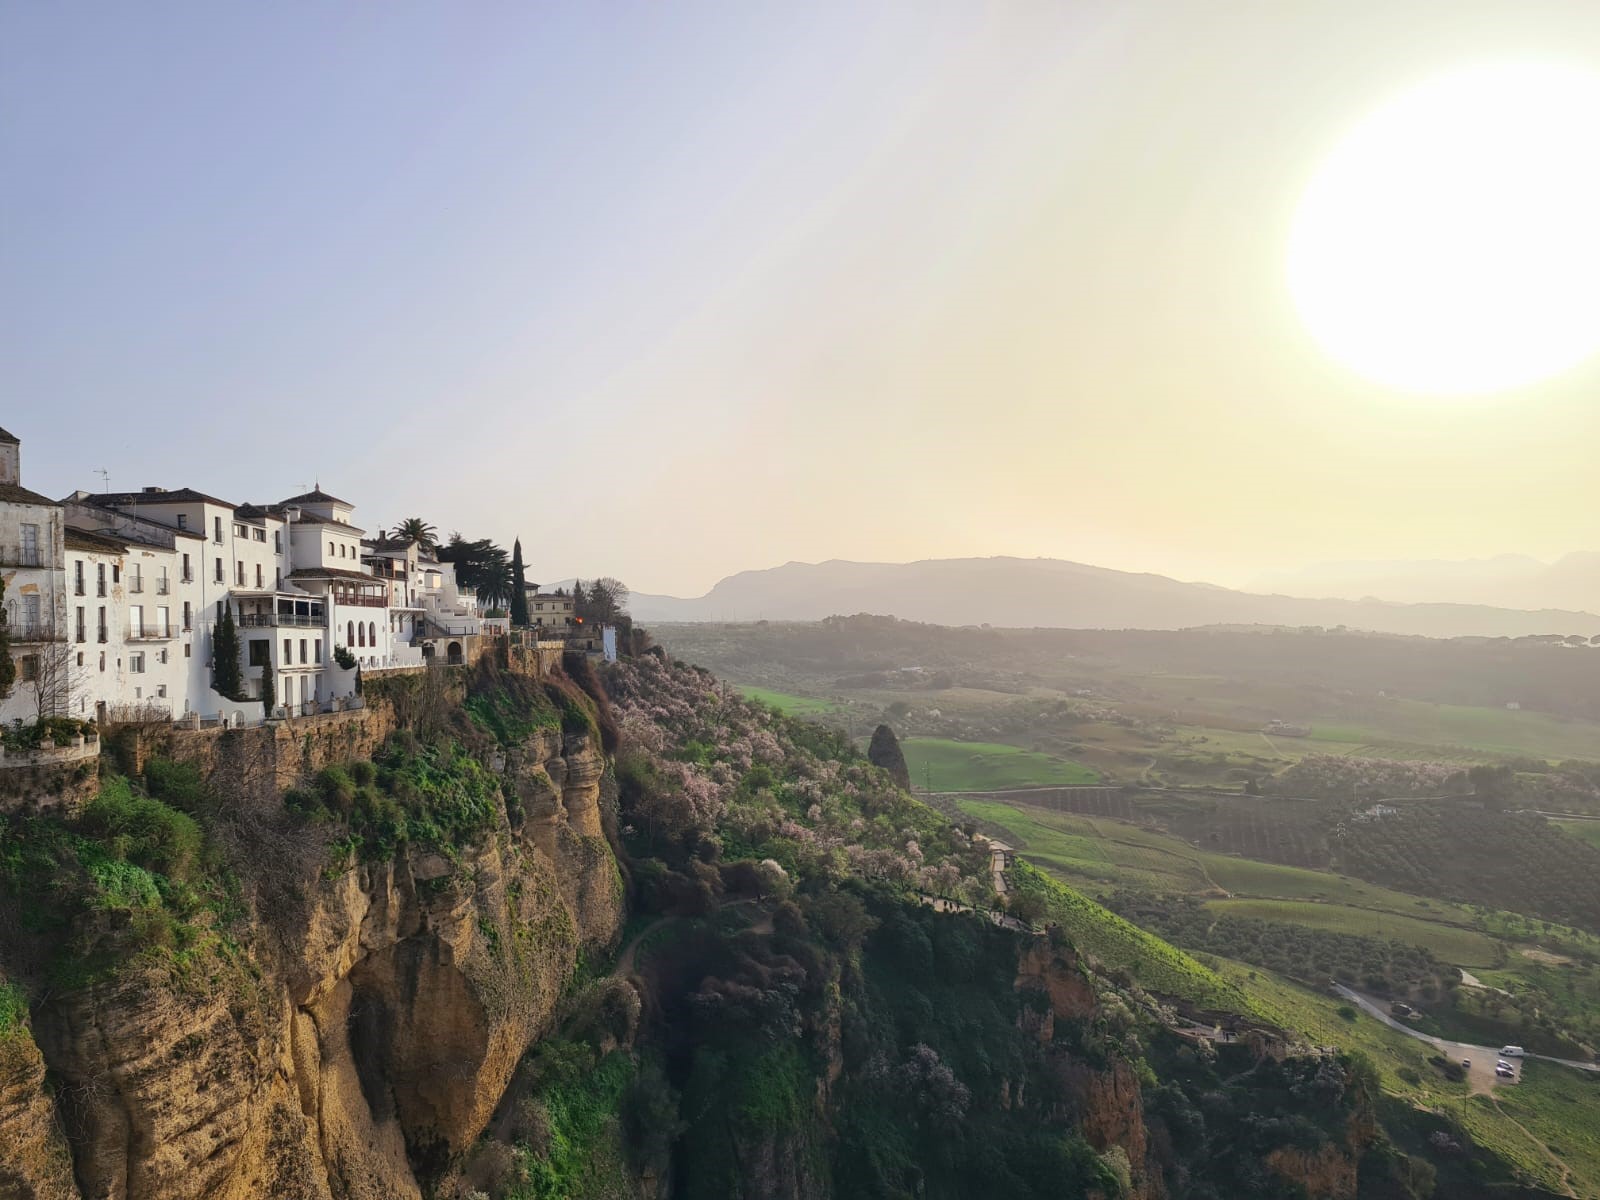 Eine sonnige Klippenlandschaft in Spanien mit kleinen hellen Häusern und einem weitläufigen Tal im Hintergrund.